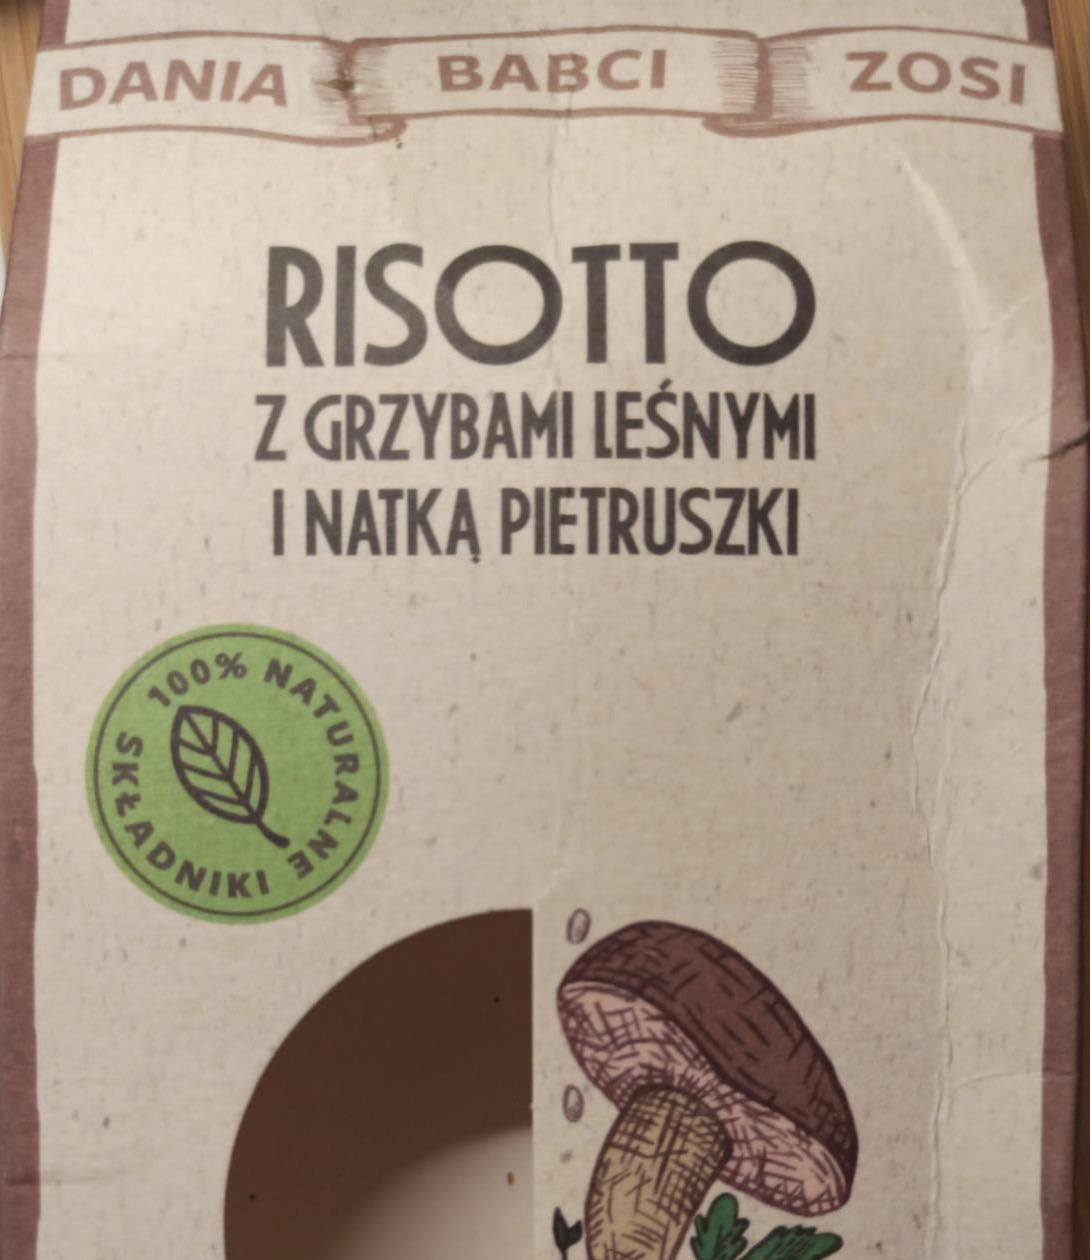 Zdjęcia - Risotto z grzybami leśnymi i natką pietruszki Dania Babci Zosi